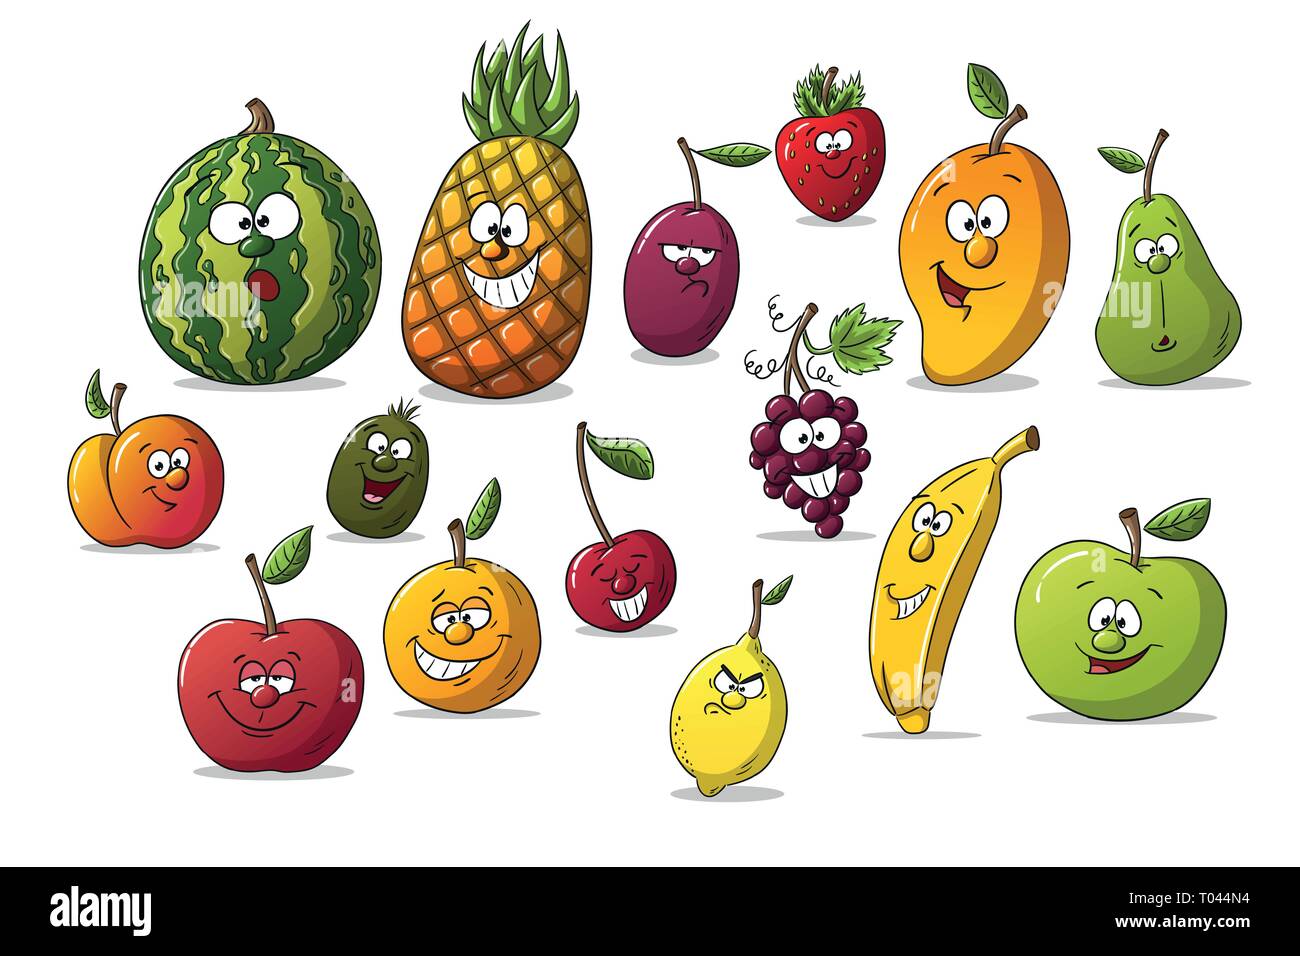 Featured image of post Separadas Frutas Y Verduras Animadas Si puedes separa las frutas de las verduras as evitar s que el etileno que producen algunas frutas produzca da os en las verduras